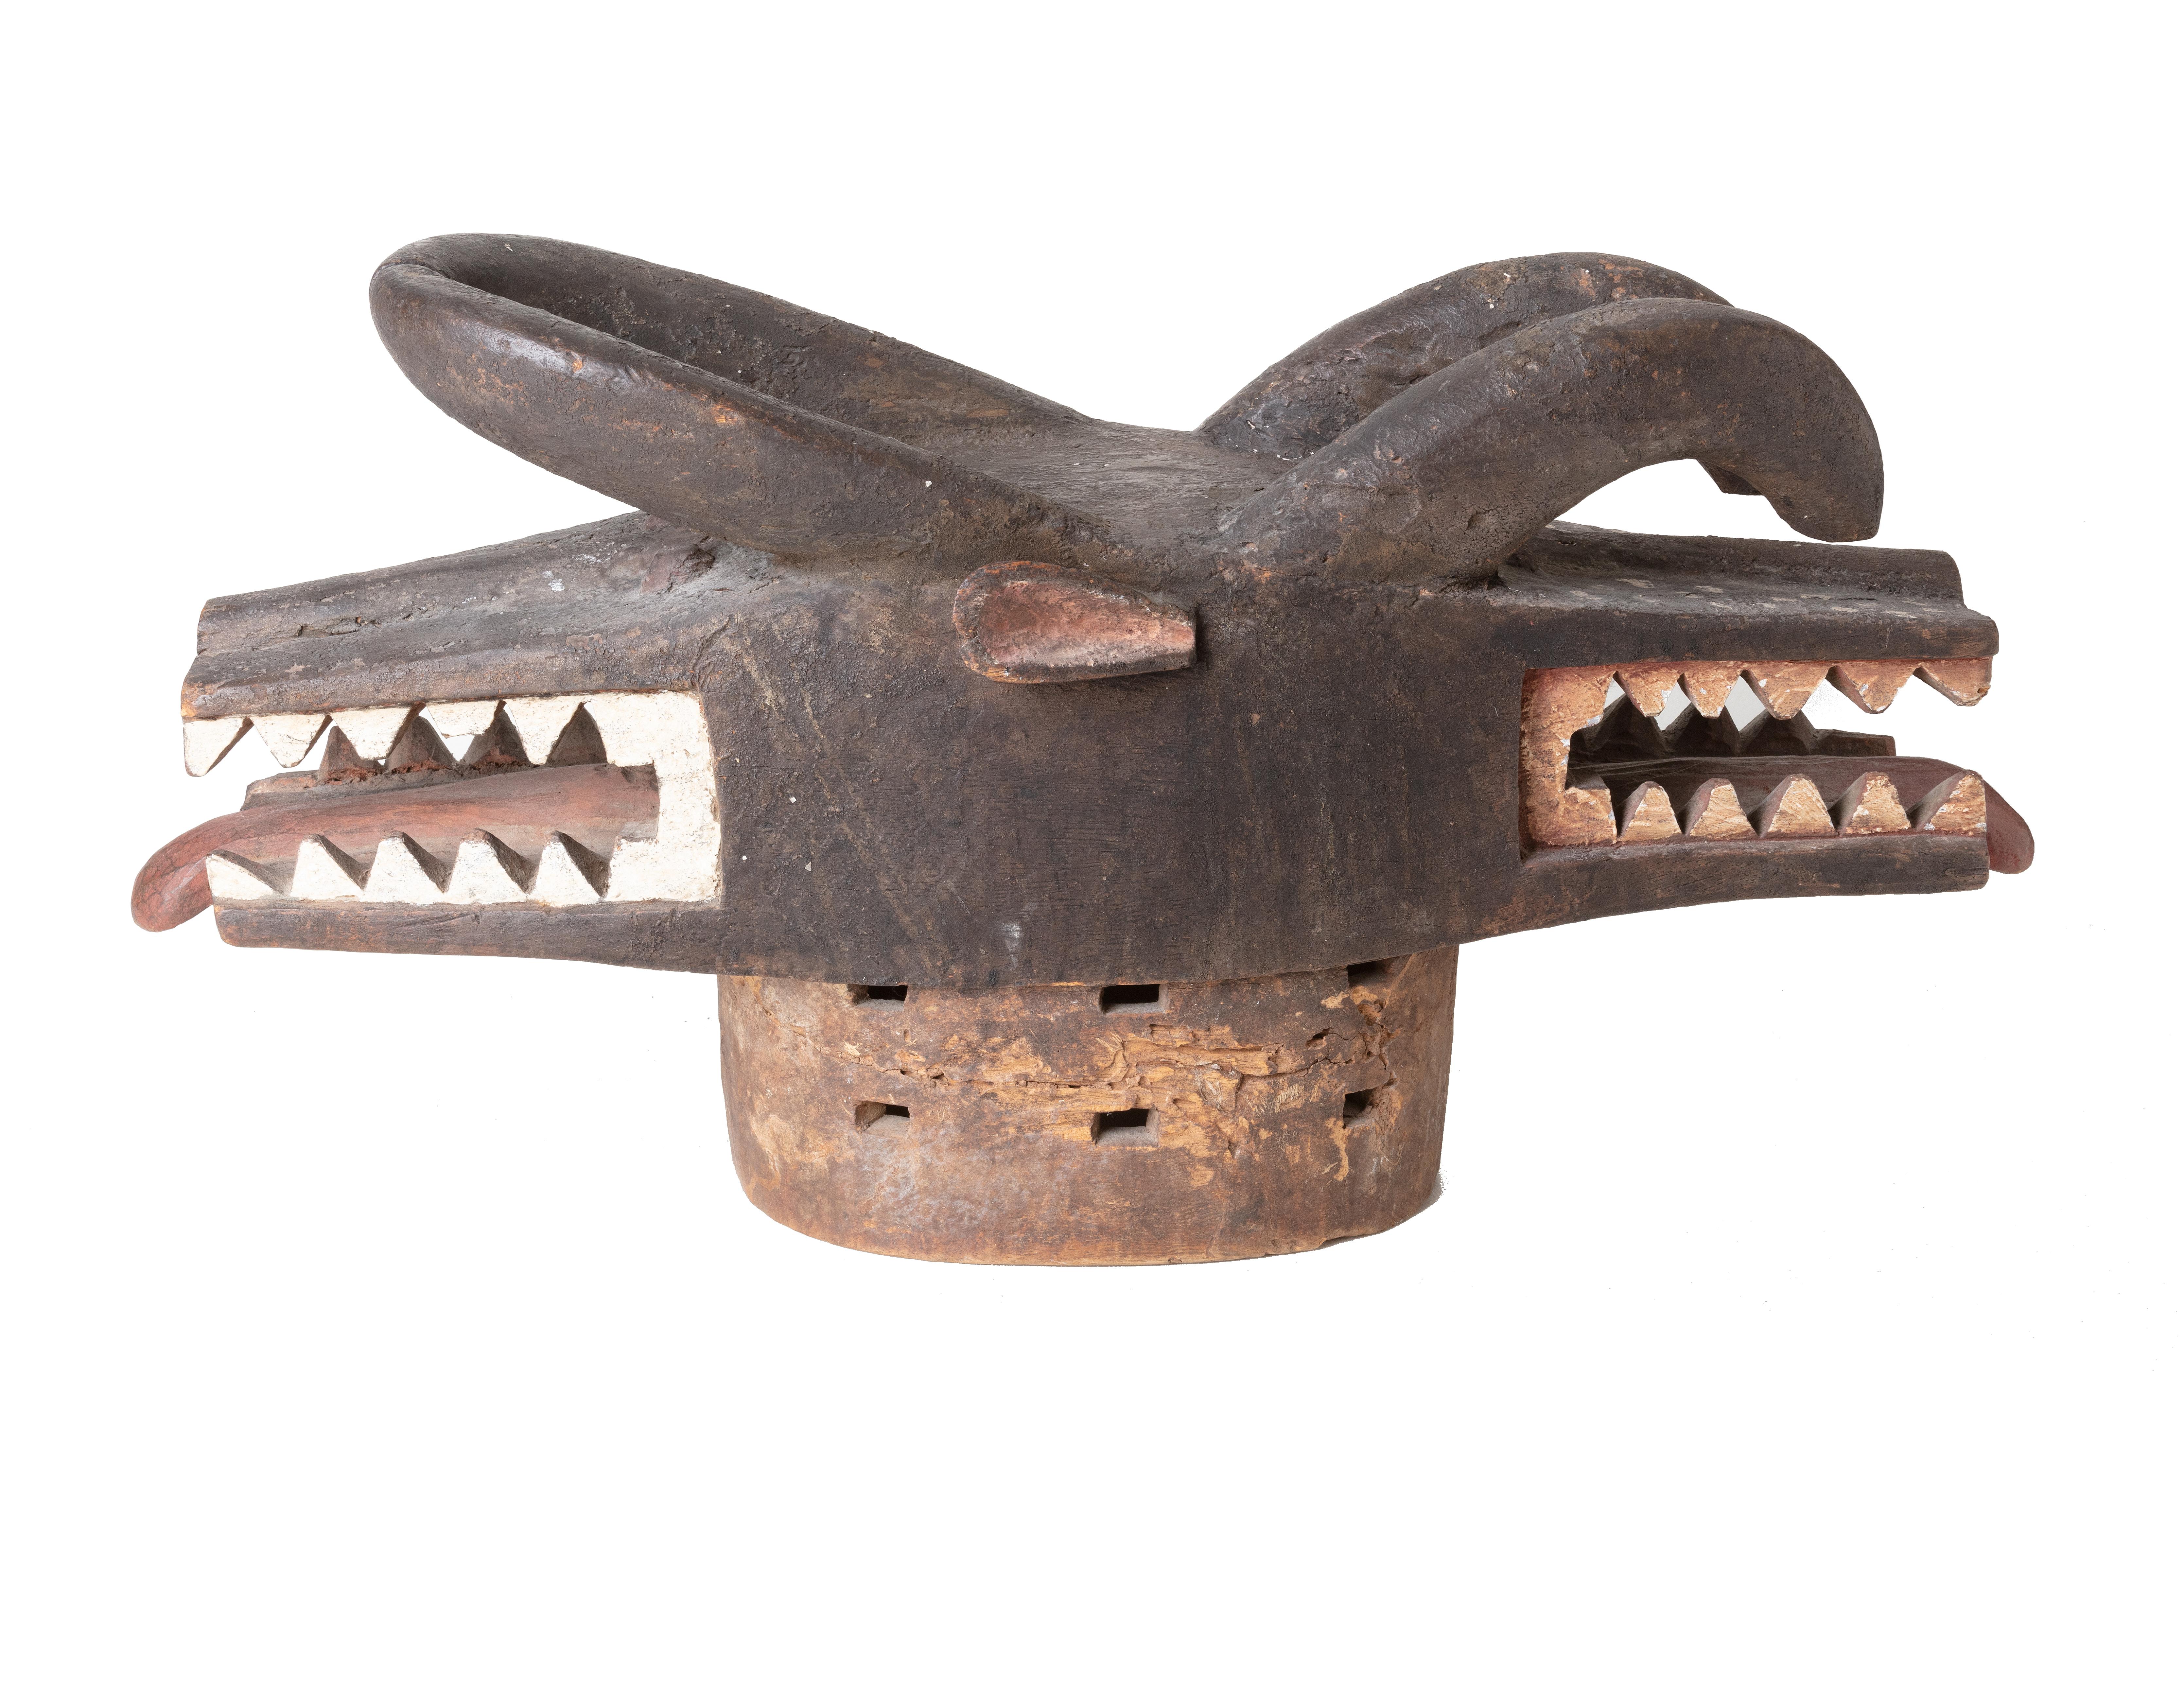 Abstract Sculpture Unknown - « Masque de paillettes rares/masque de cérémonies de toilette Senufo », bois de la côte ivoire